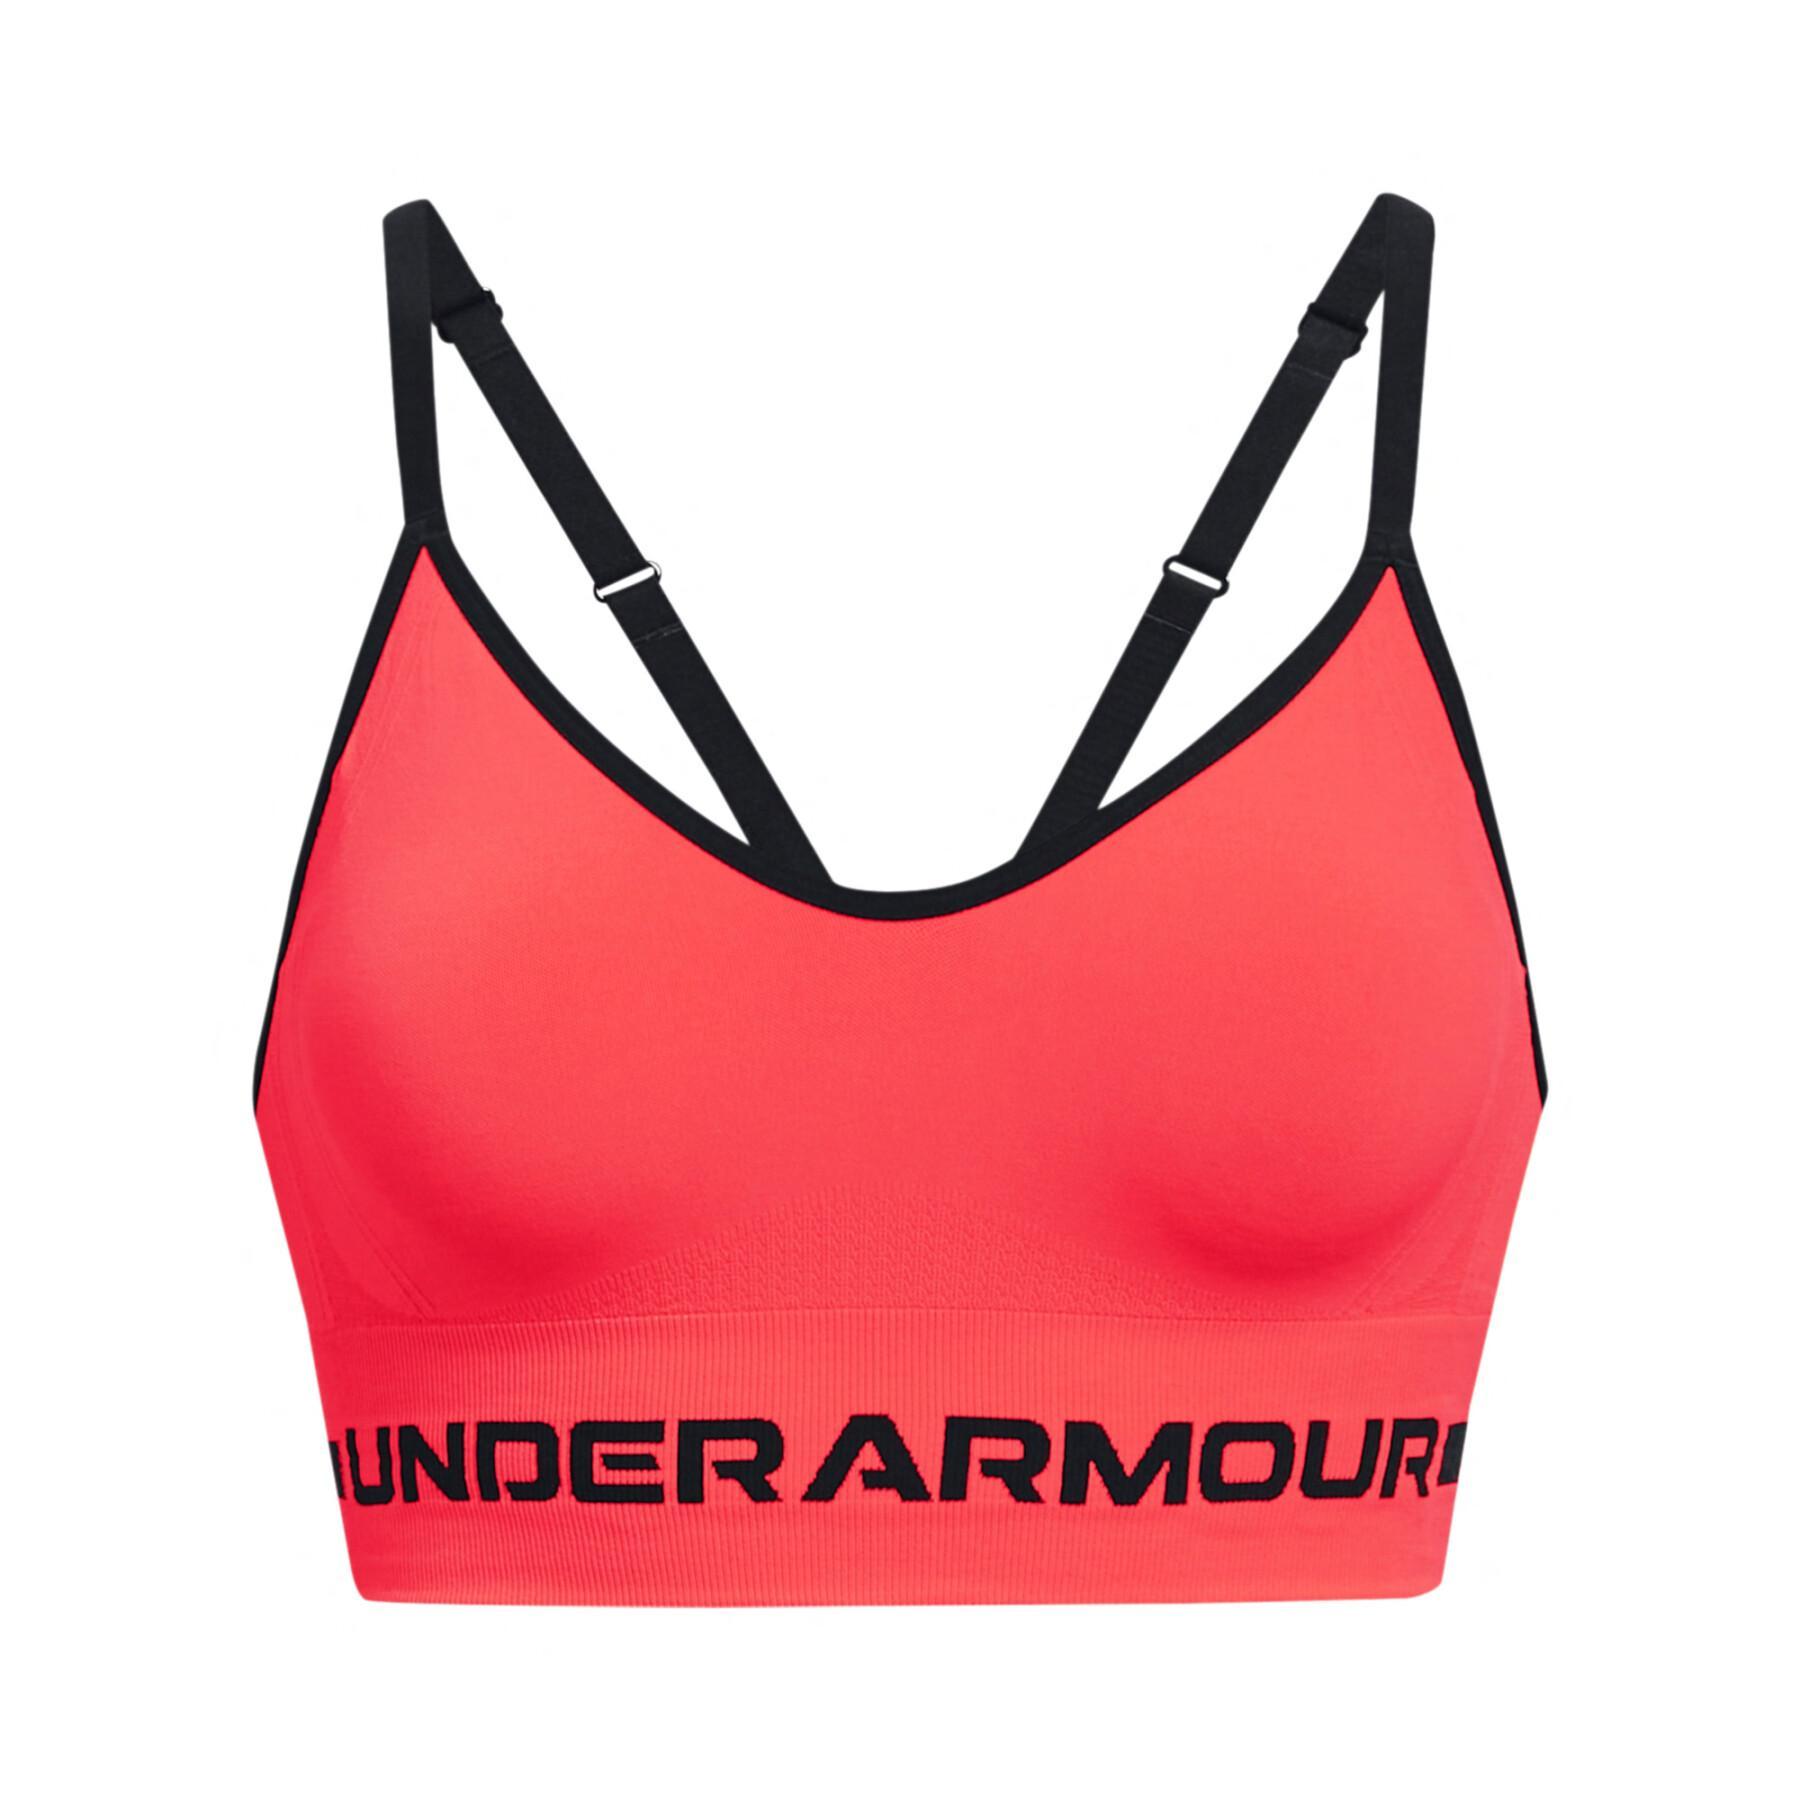 Seamless light support bra for women Under Armour - Bras - Women's